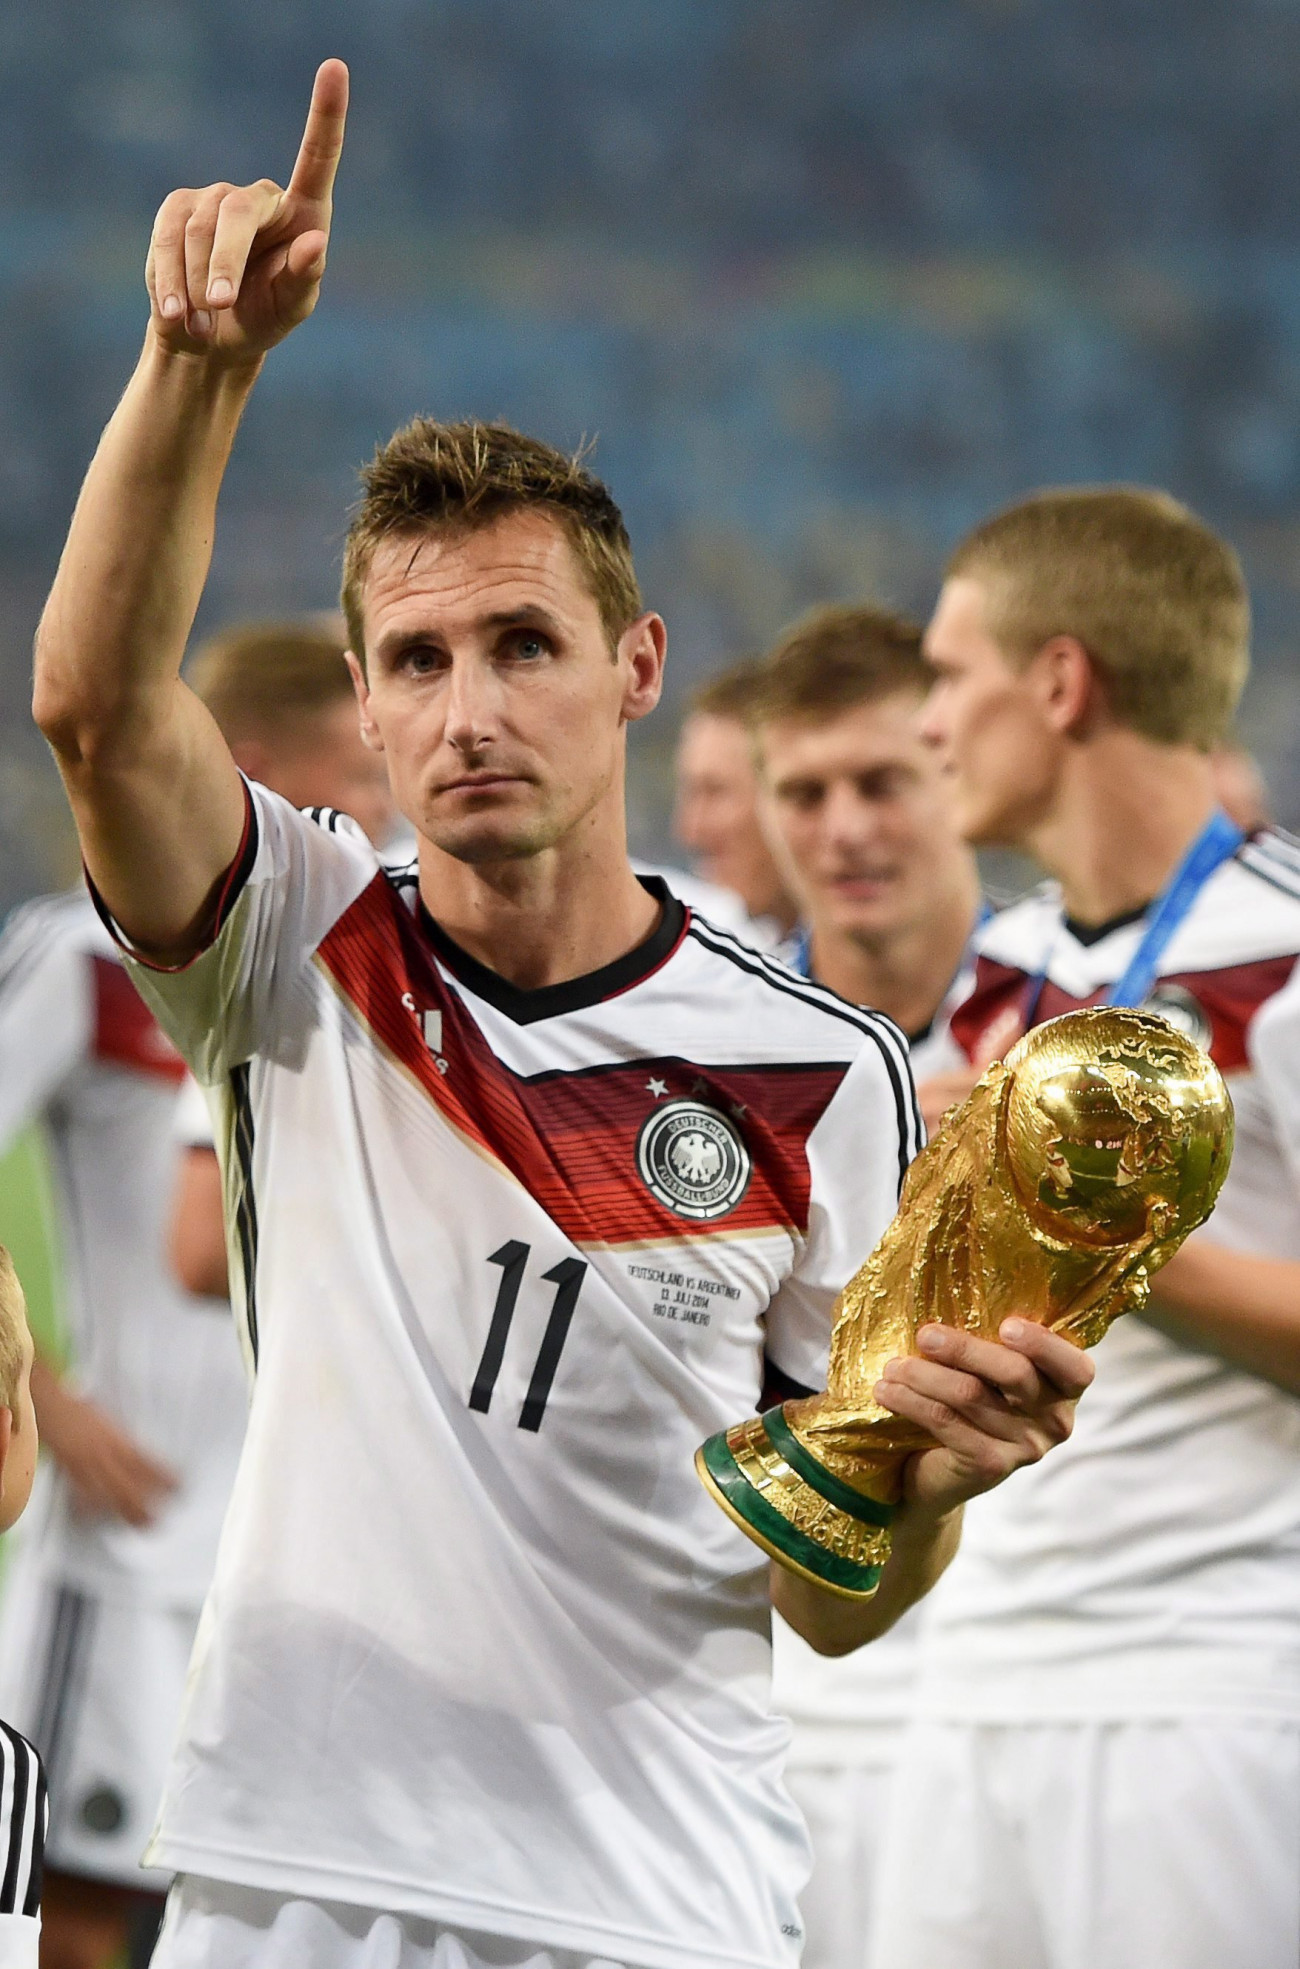 Rio de janeiro, 2016. november 1.
2014. július 13-i kép Miroslav Klose lengyel származású német válogatott labdarúgóról a brazíliai labdarúgó-világbajnokság Németország - Argentína döntő mérkőzésének eredményhirdetésén a Rio de Janeiró-i Maracana Stadionban. A világbajnokságok legeredményesebb futballistájaként számon tartott 38 éves játékos 2016. november 1-jén bejelentette visszavonulását. Klose edzőként szándékozik csatlakozni a nemzeti csapathoz. (MTI/EPA/Marcus Brandt) *** Local Caption *** 51479700